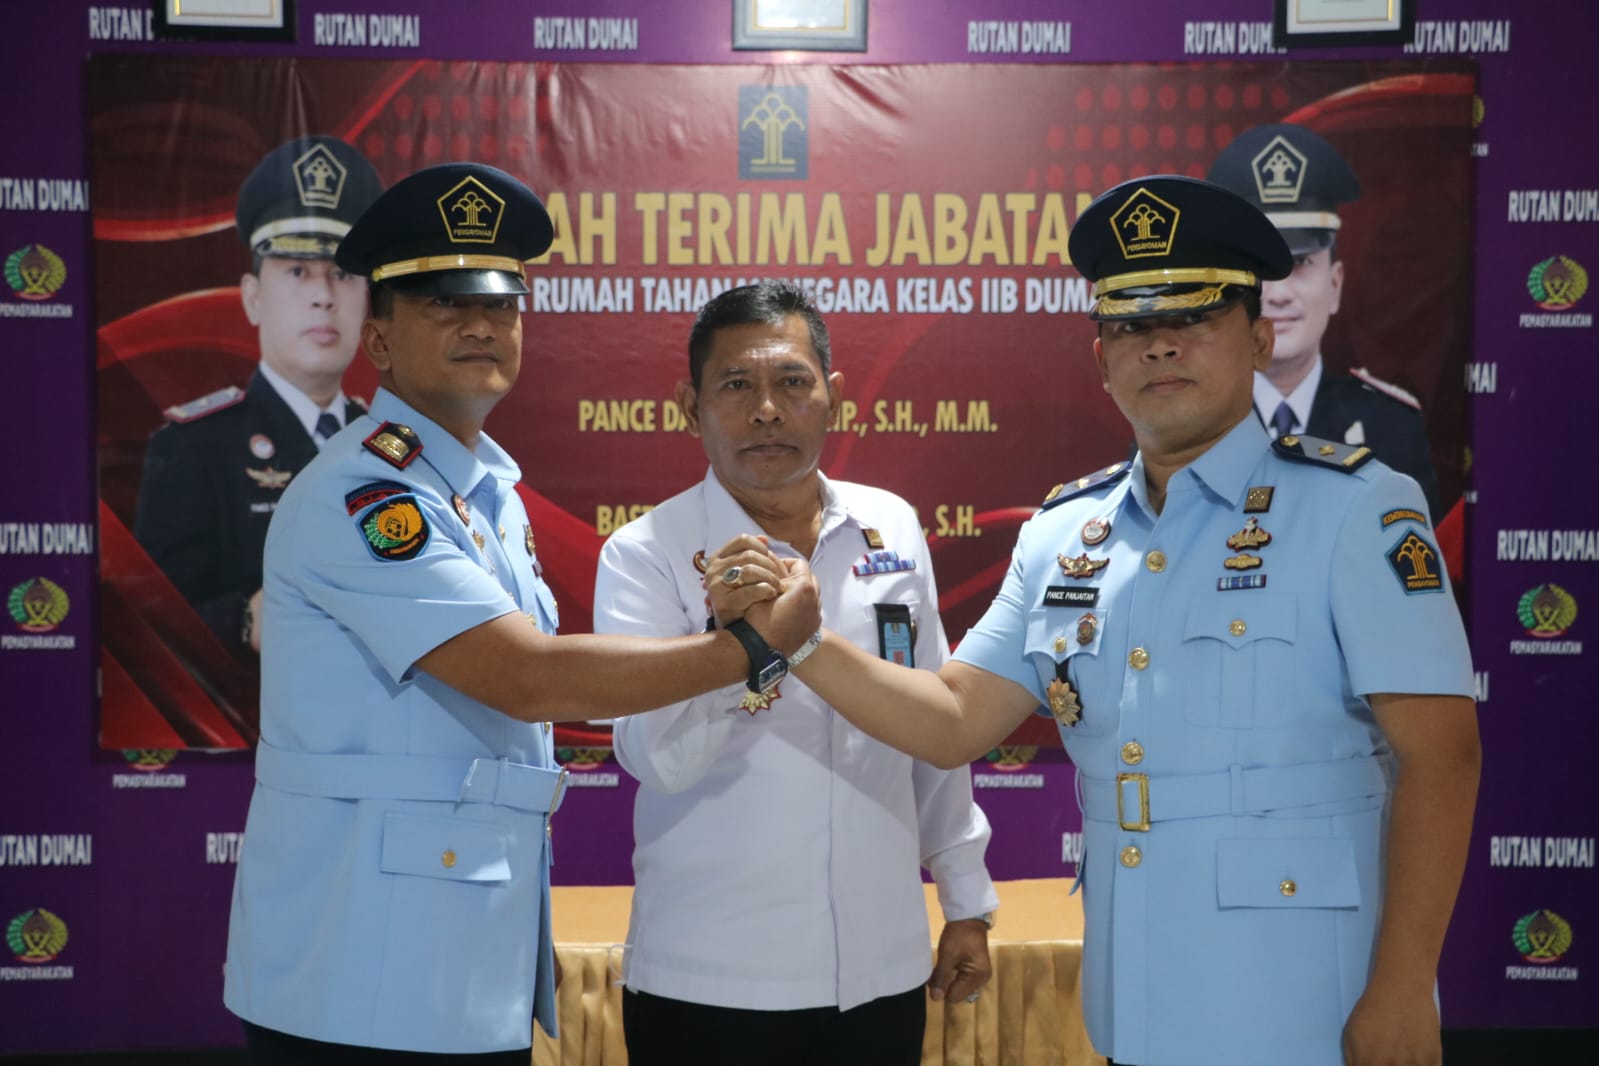 Pance Daniel Serah Terimakan Jabatan Kepala Rutan Dumai Kepada Bastian Manalu